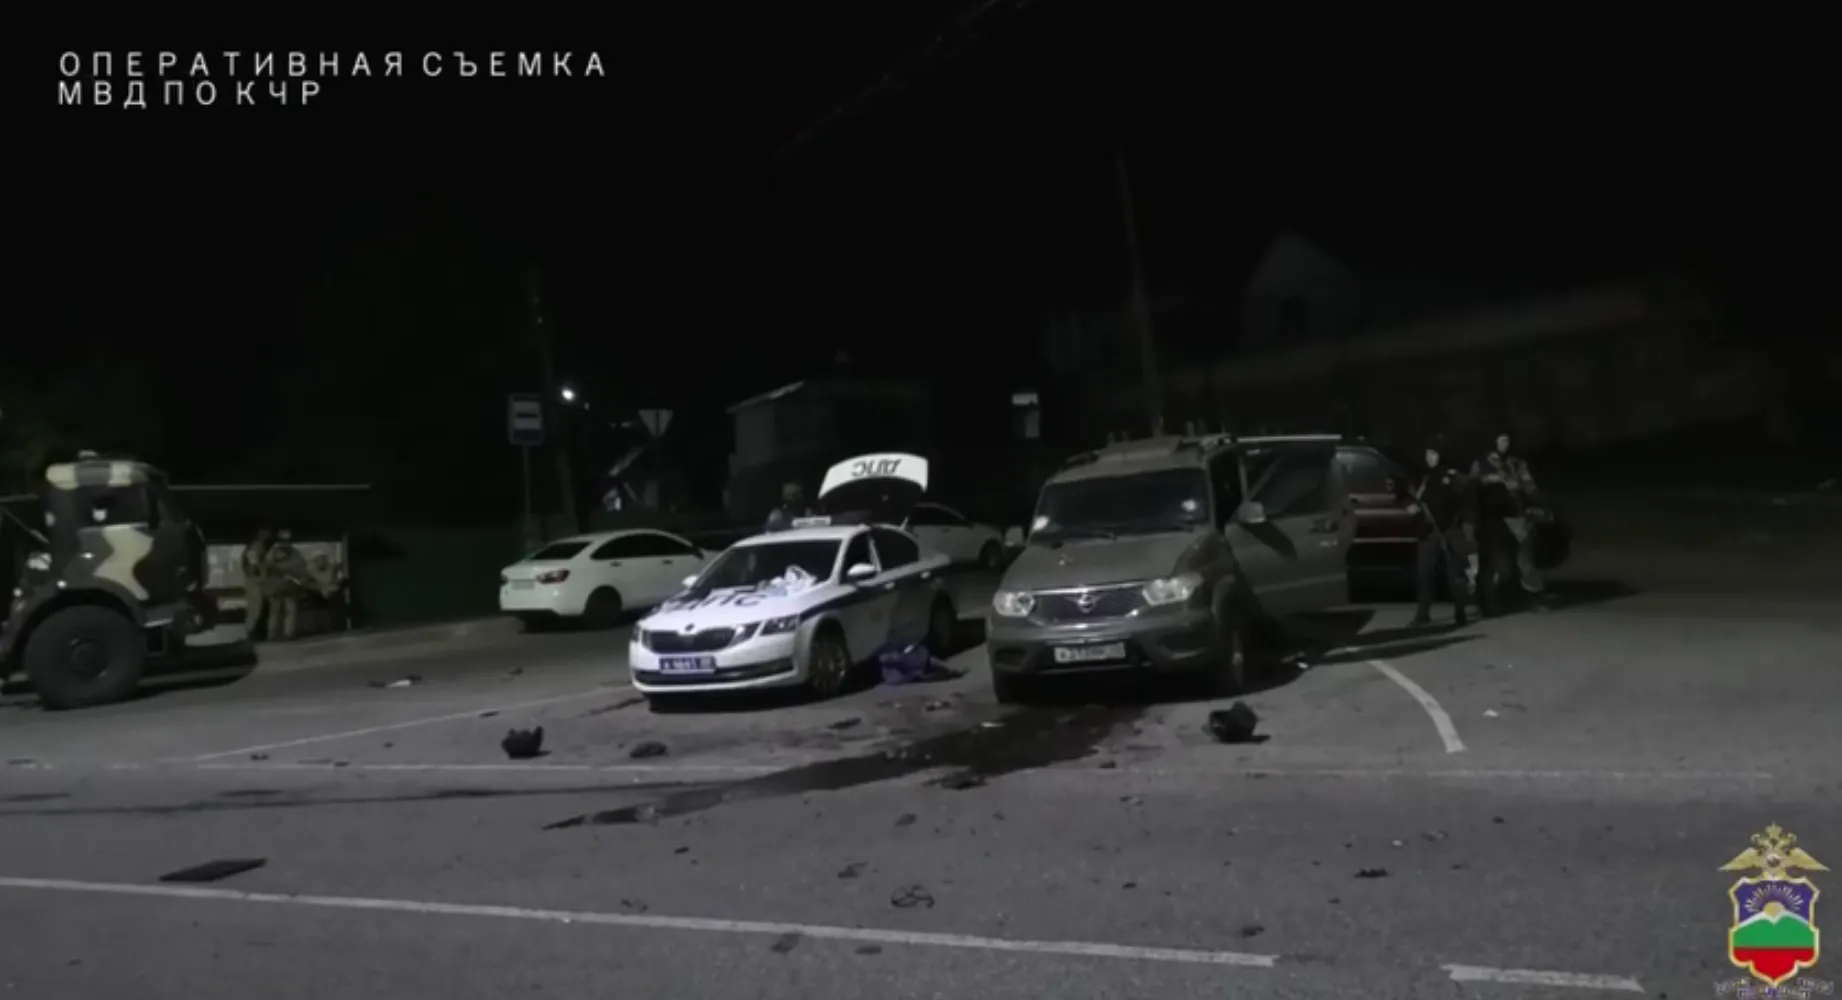 Пятеро напавших на полицию убиты ответным огнём в КЧР, на месте перестрелки нашли бомбы